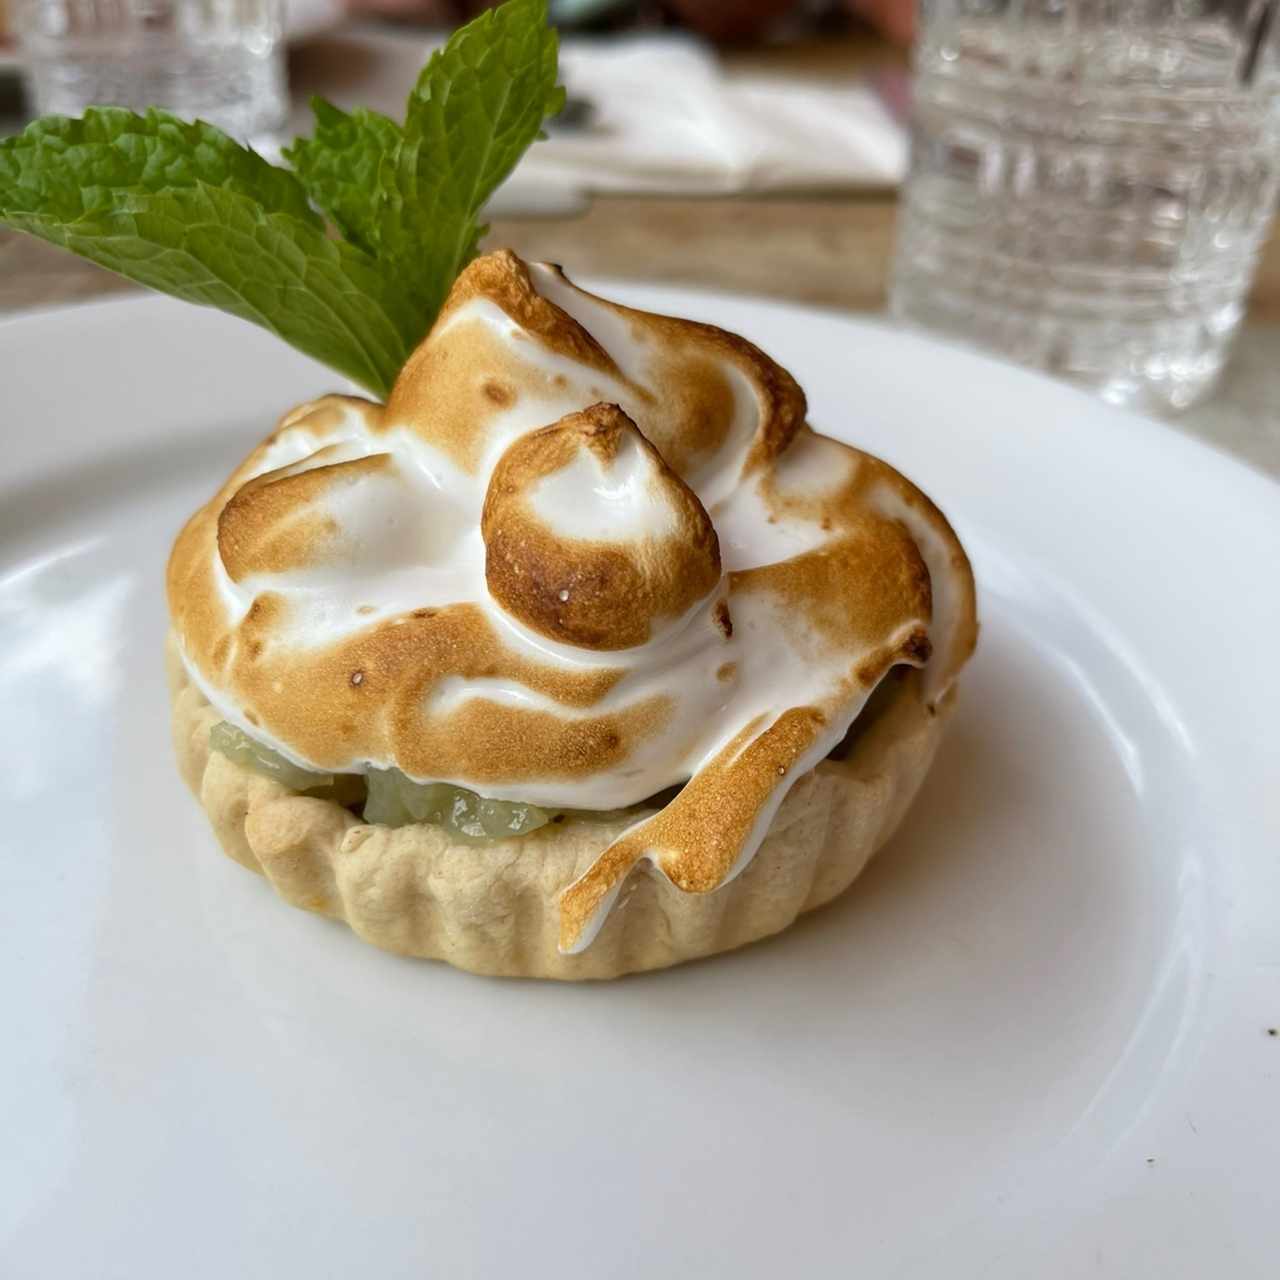 Postres Desserts - Lemon meringae pie